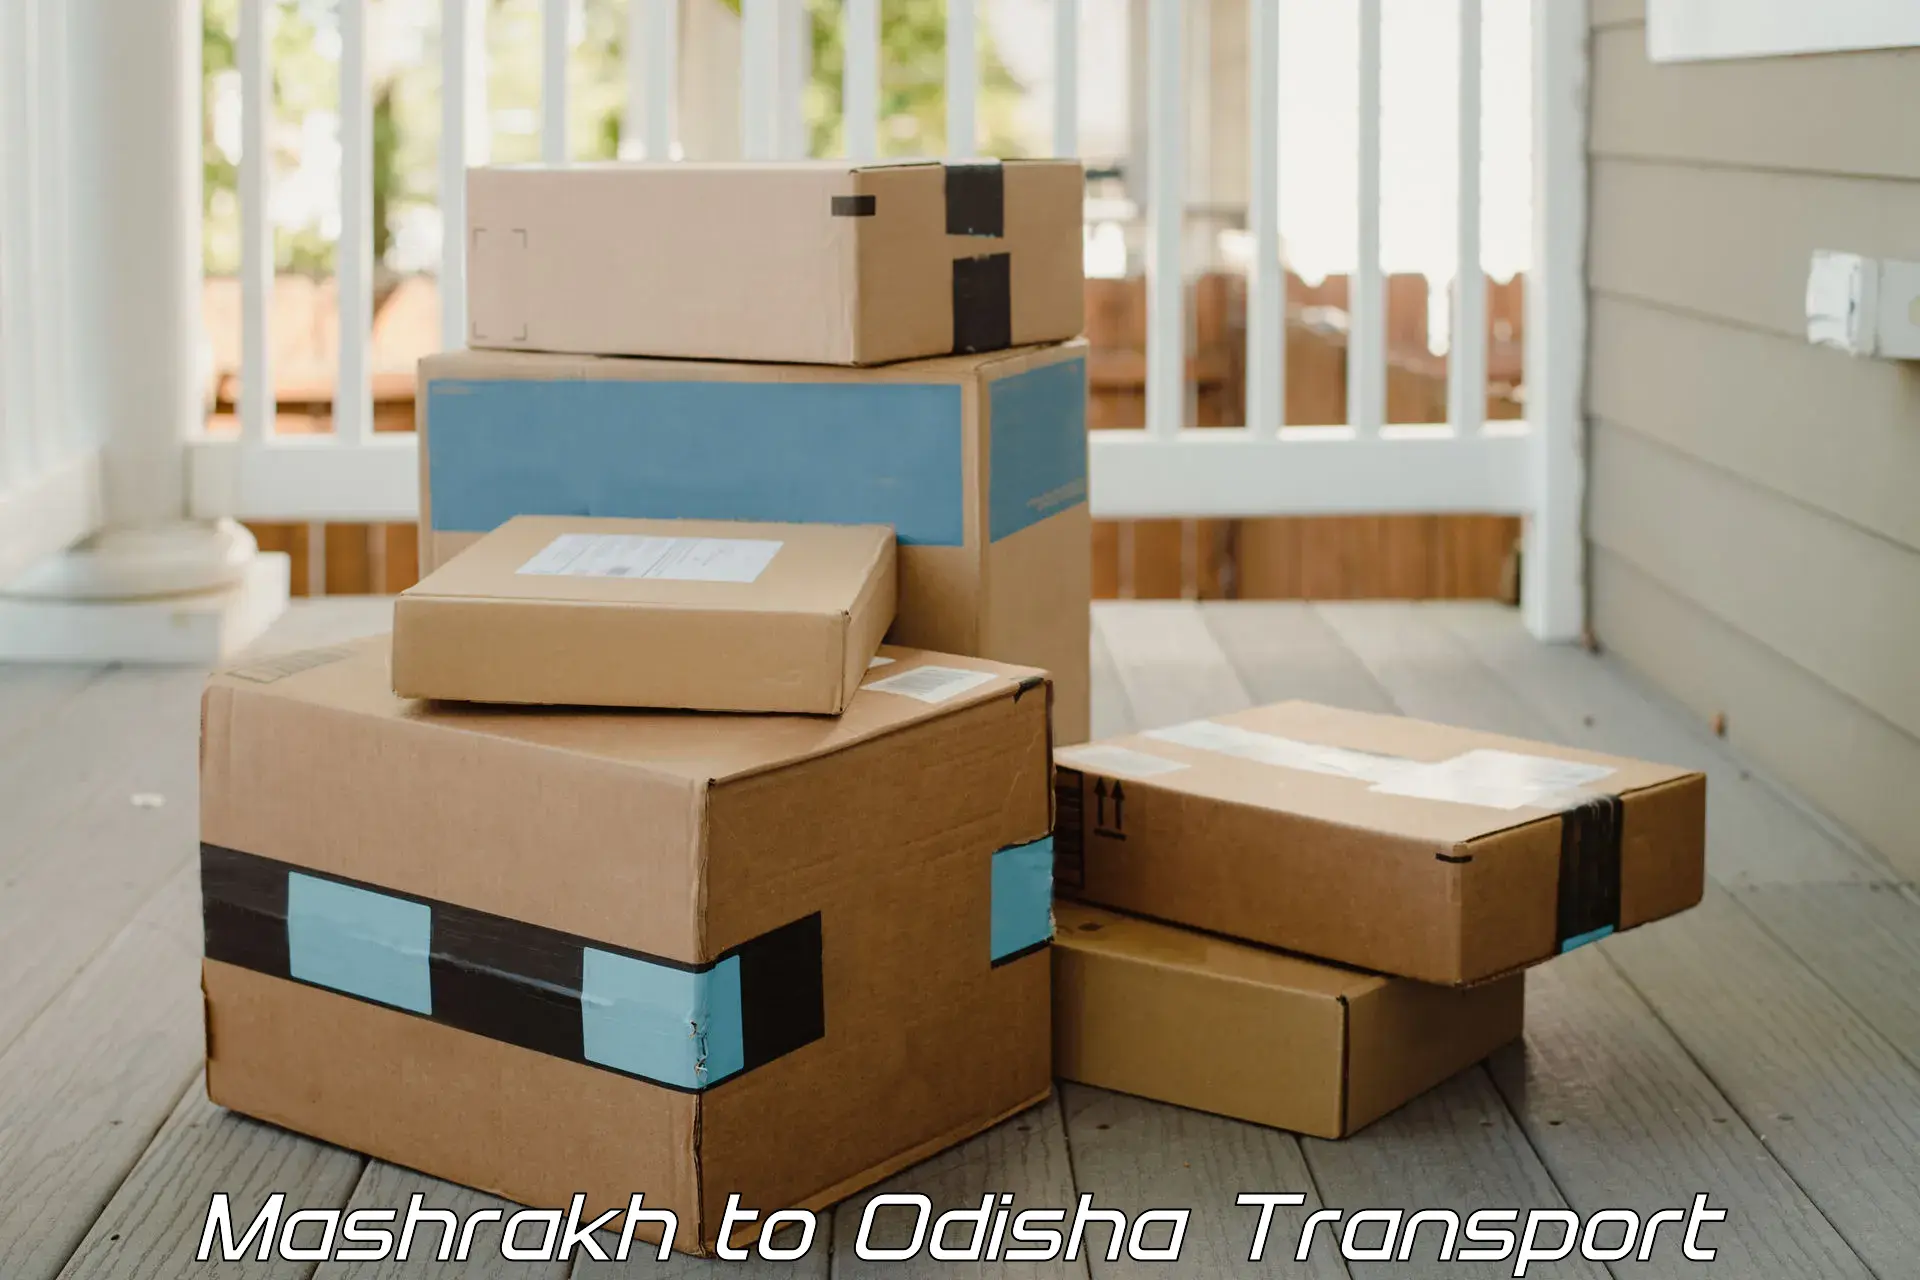 Luggage transport services Mashrakh to Ukhunda